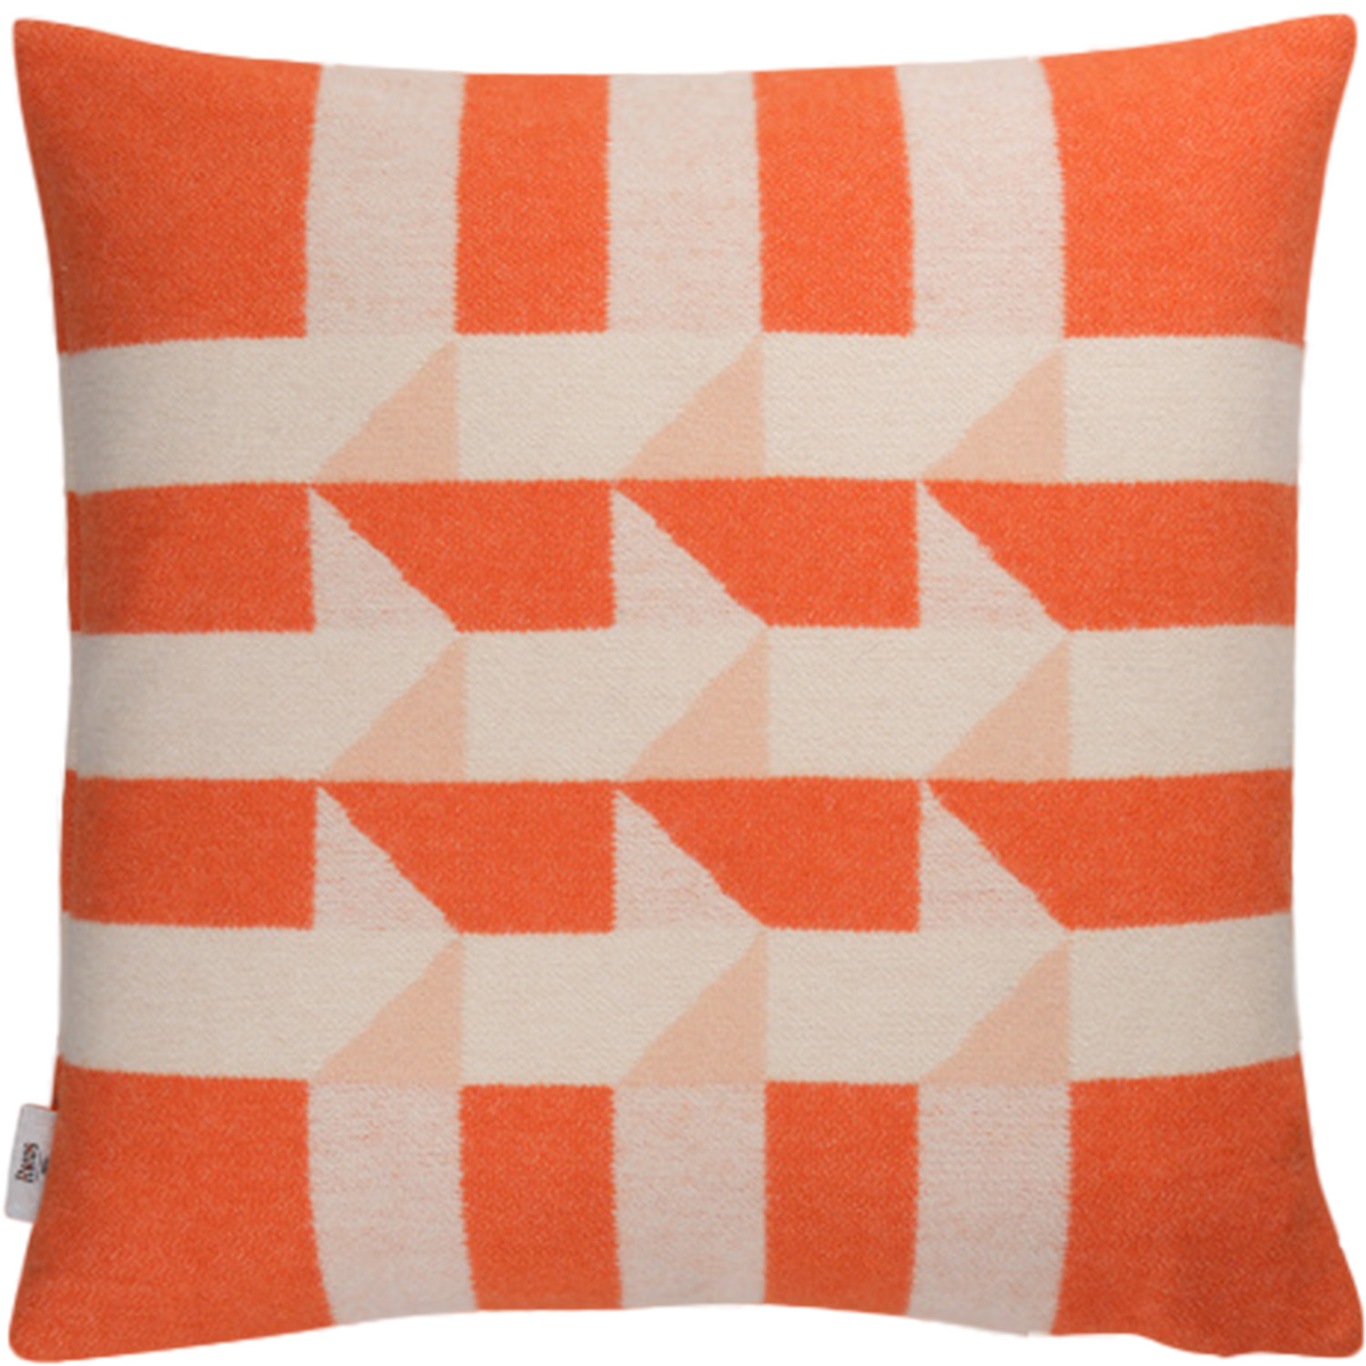 KVAM Cushion 50x50 cm, Orange